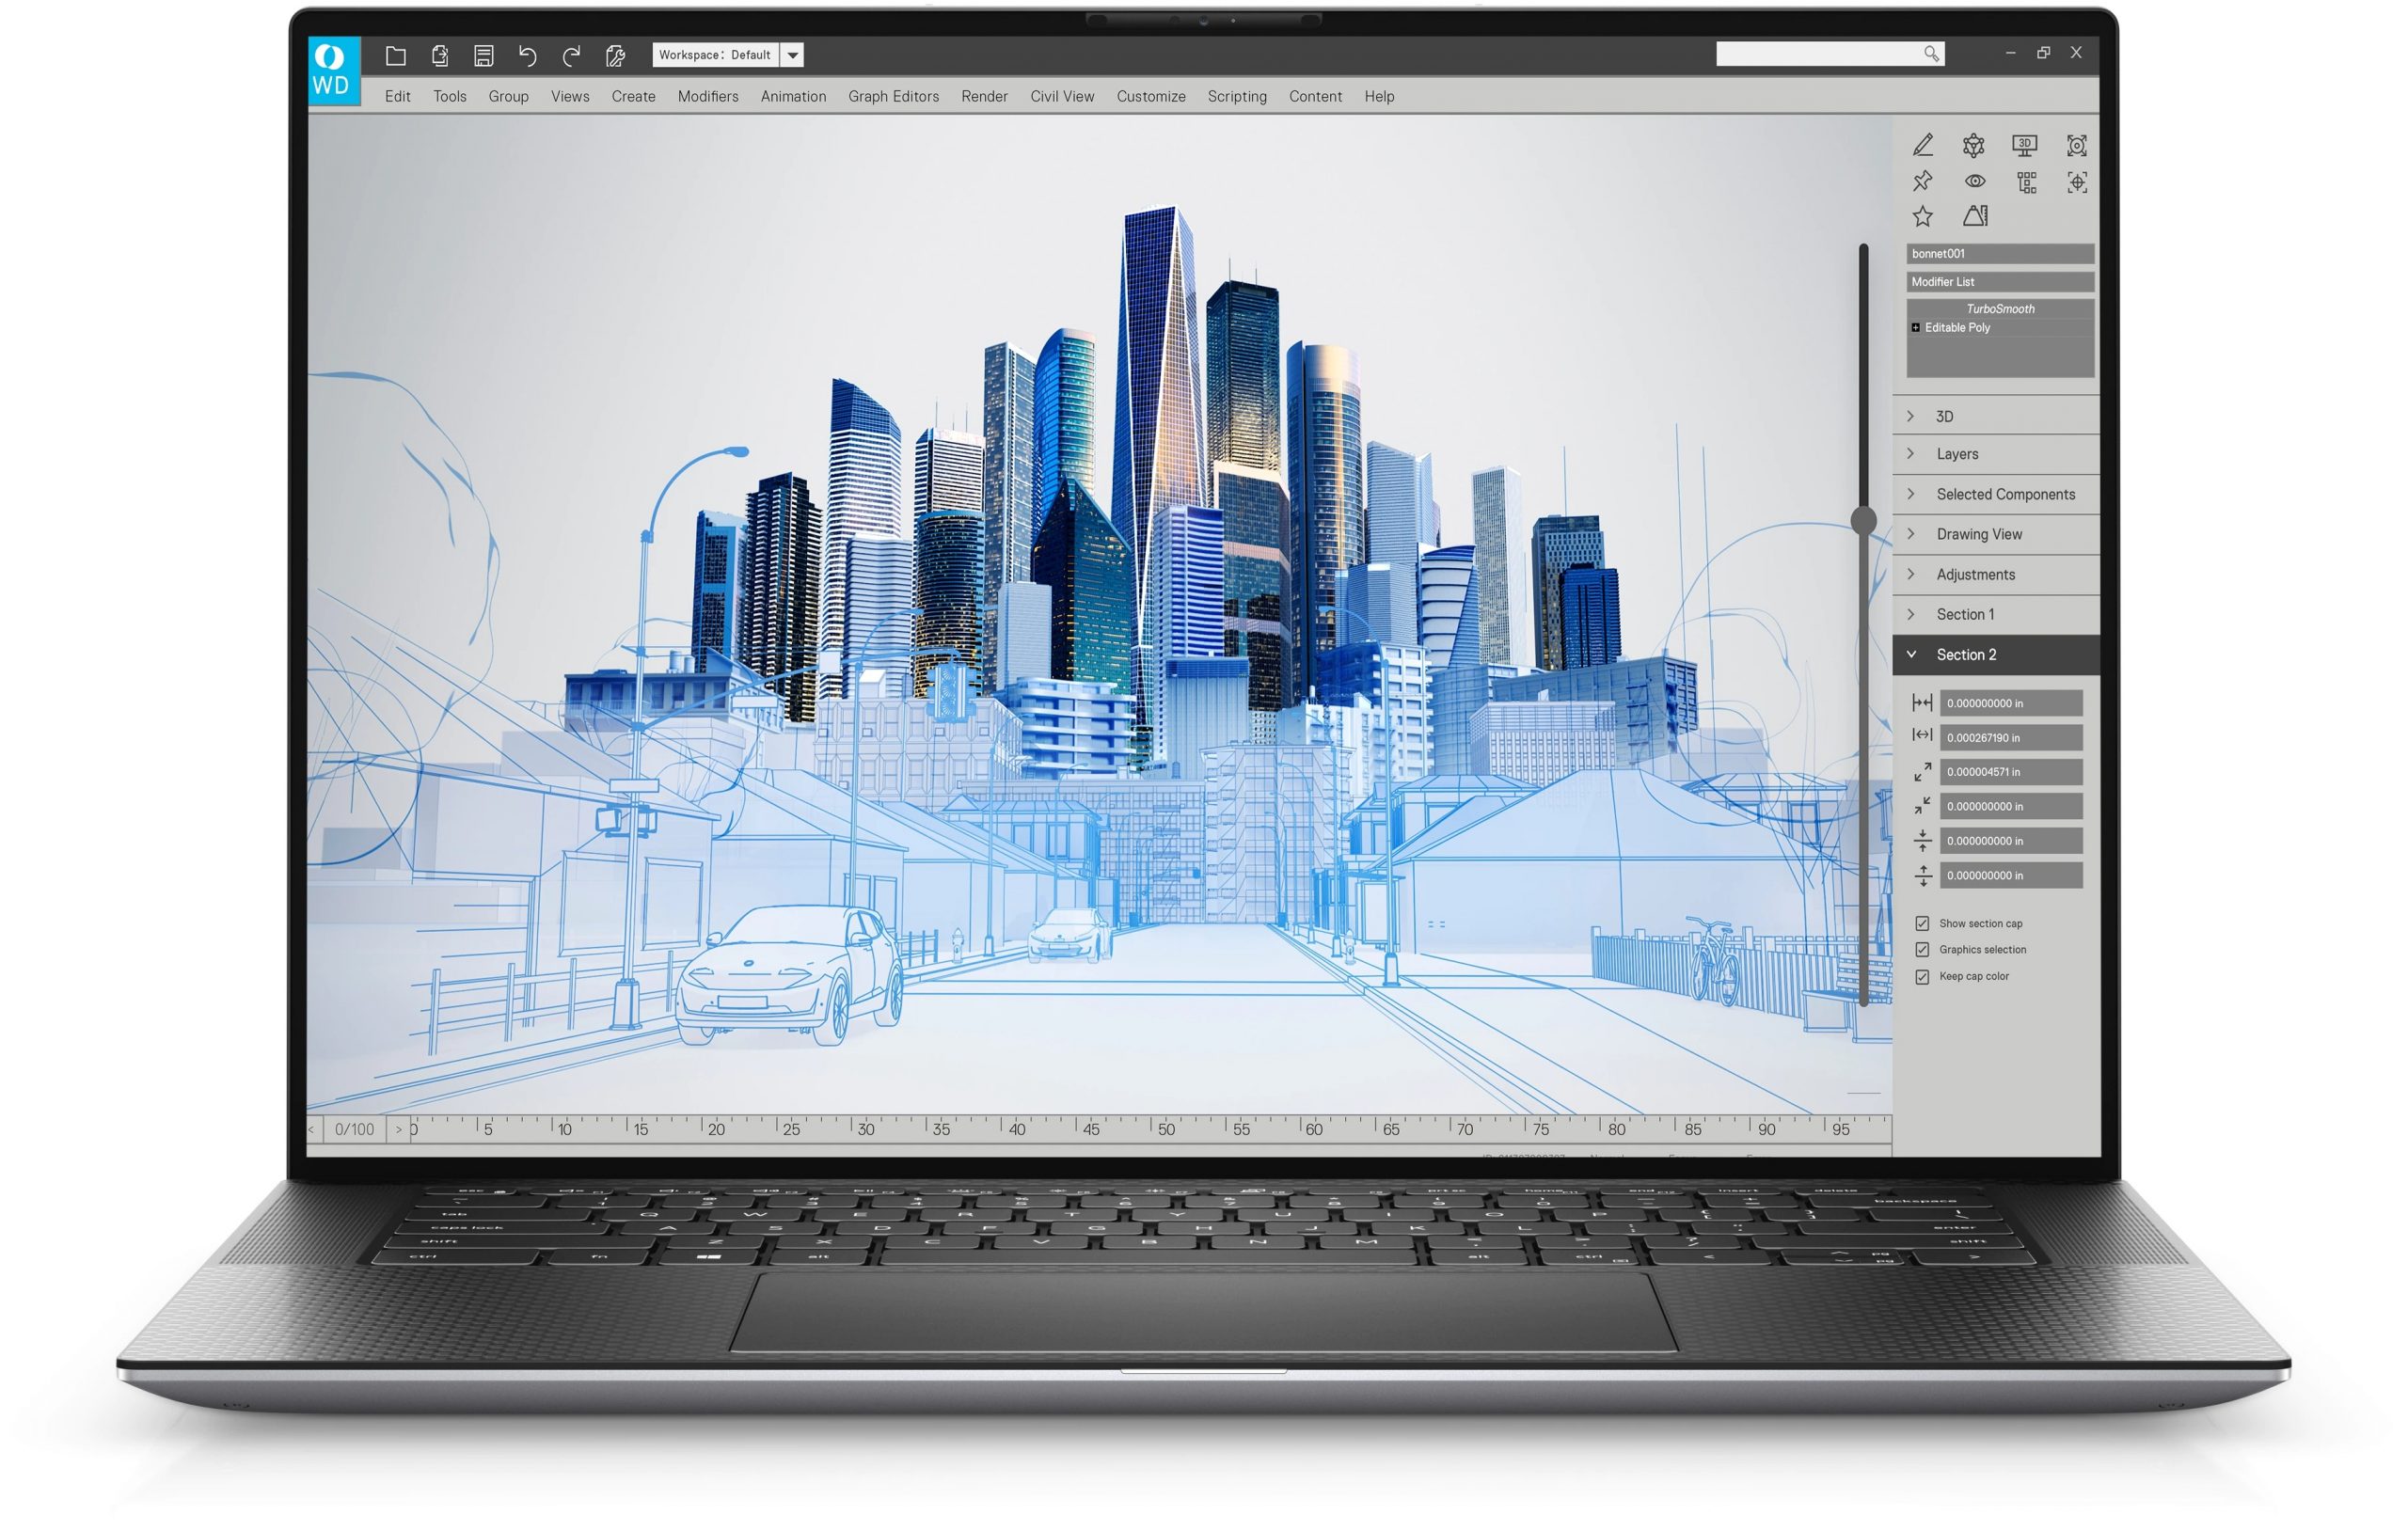 Dell Precision 5560 Workstation Siêu Mỏng cho đồ họa